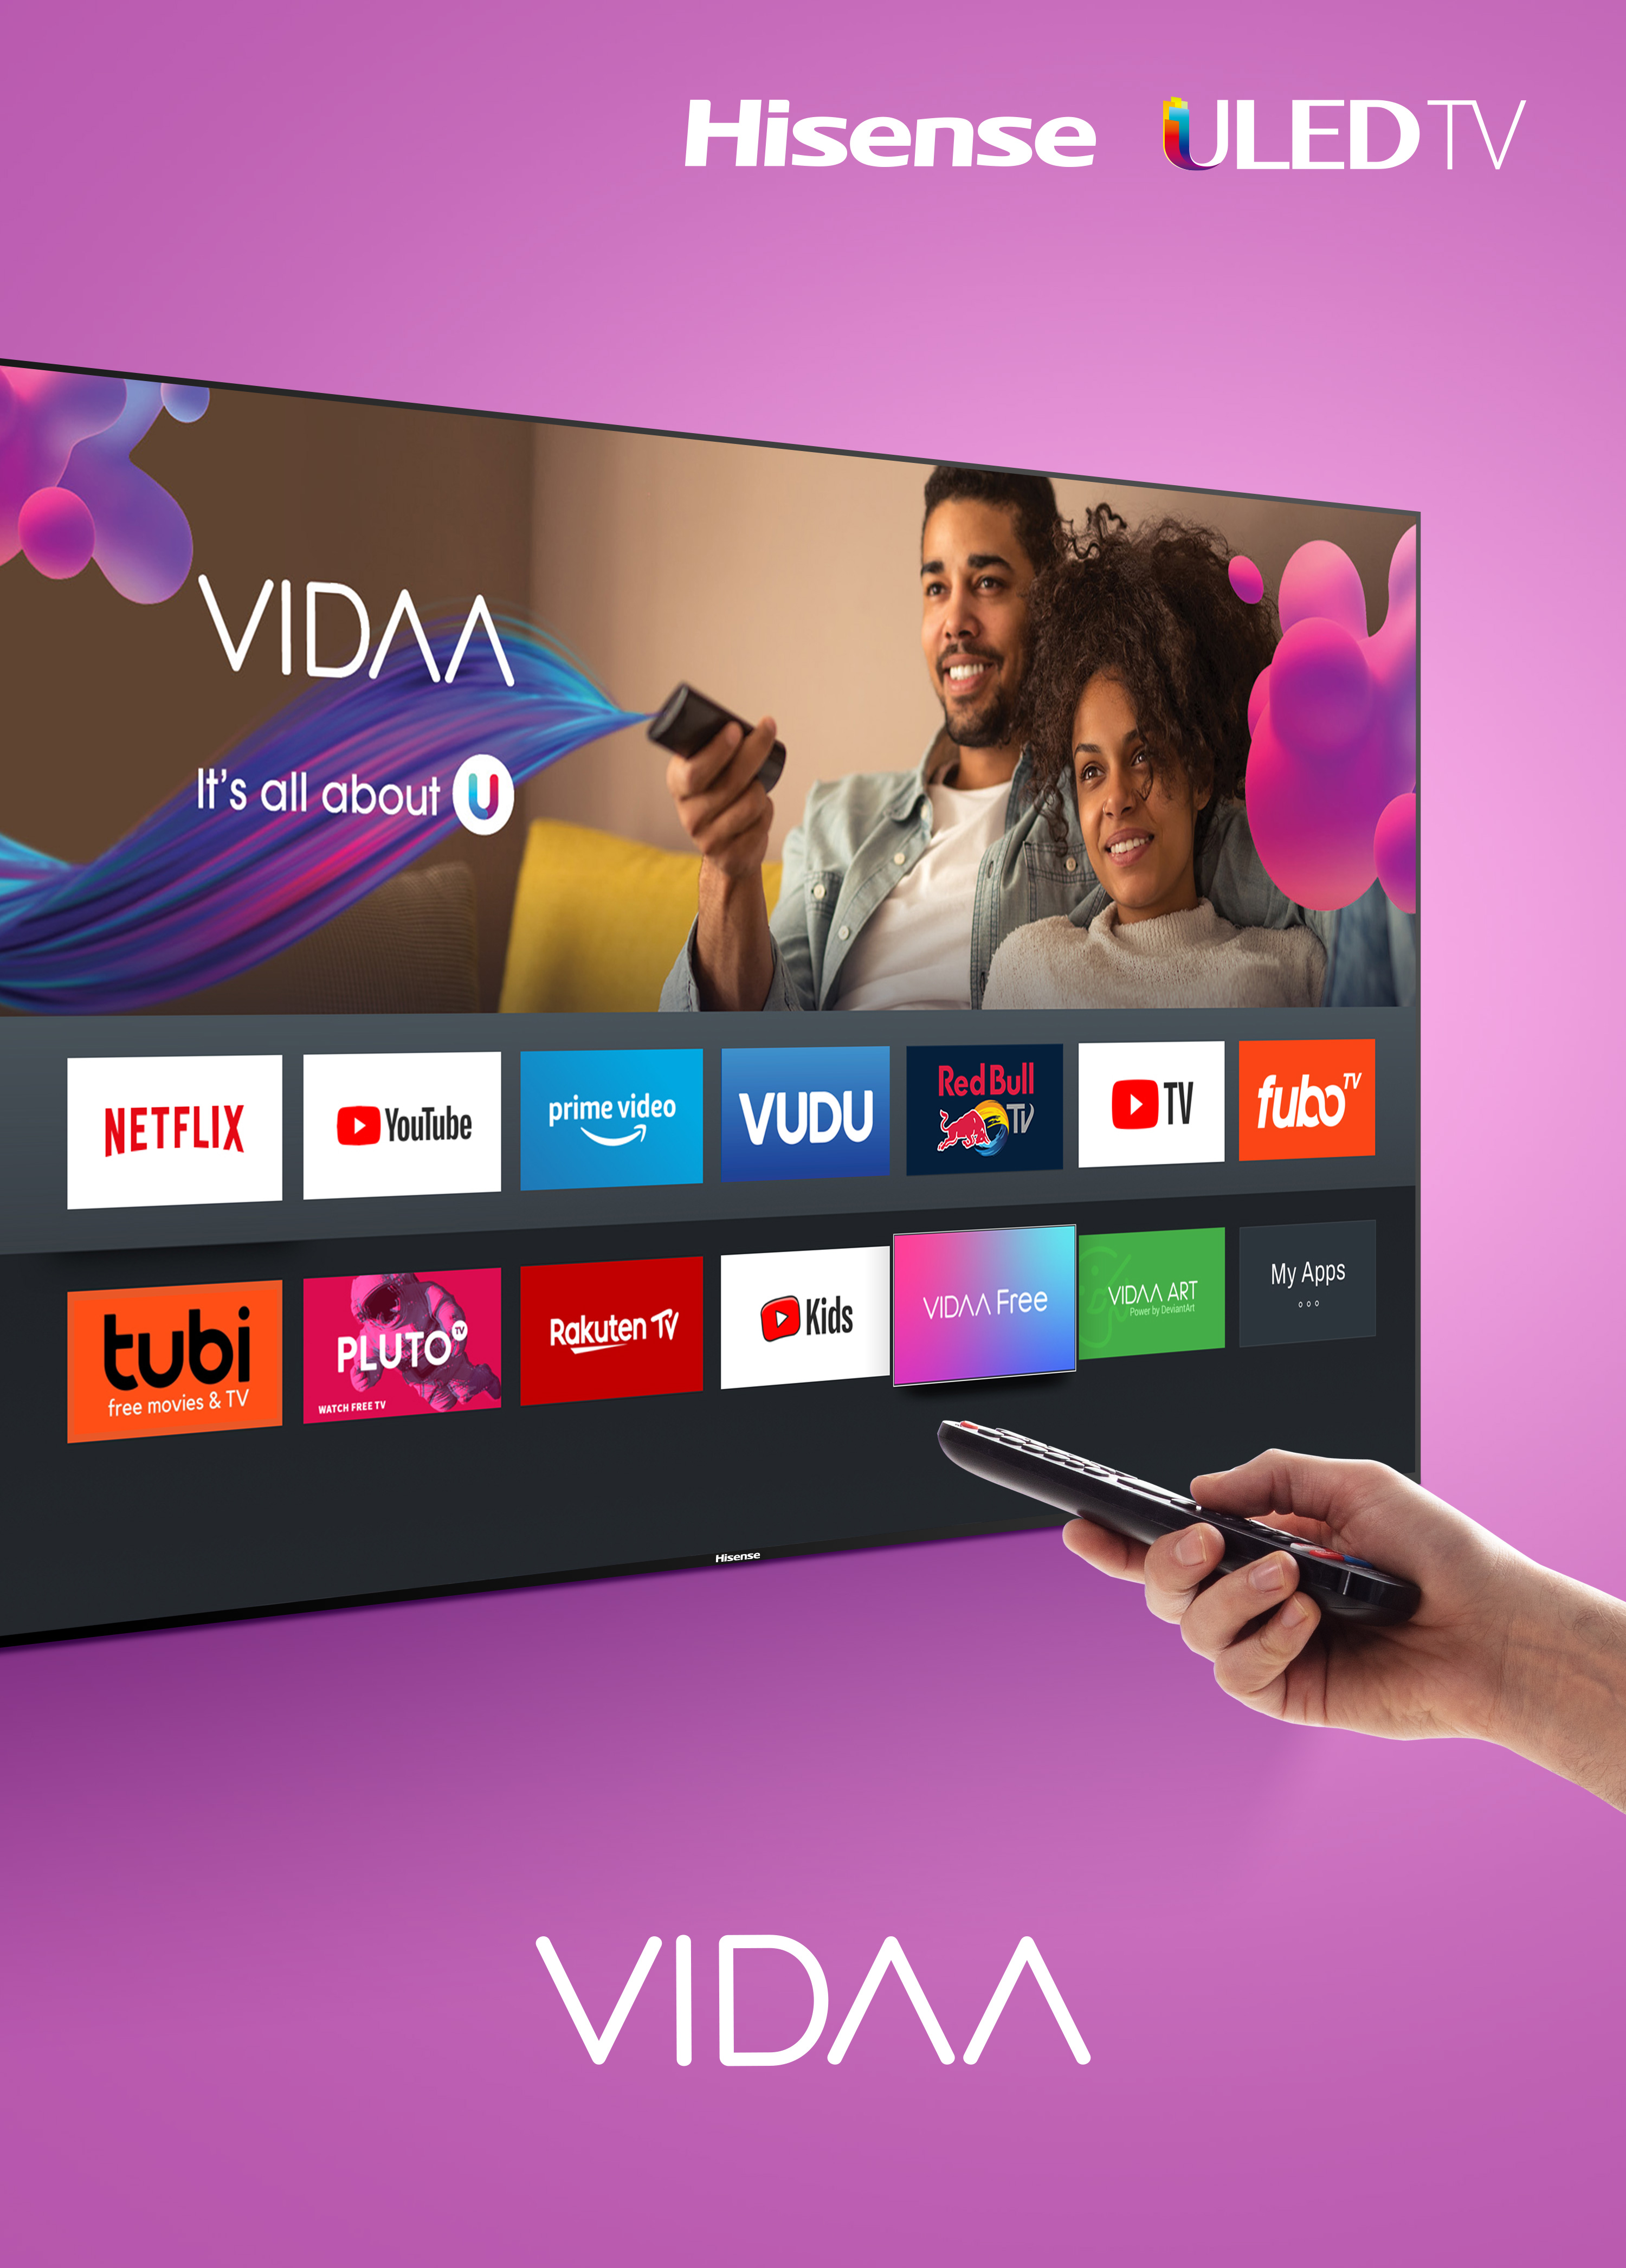 Hisense revoluciona el entretenimiento en el hogar con su nueva gama de televisores 2020